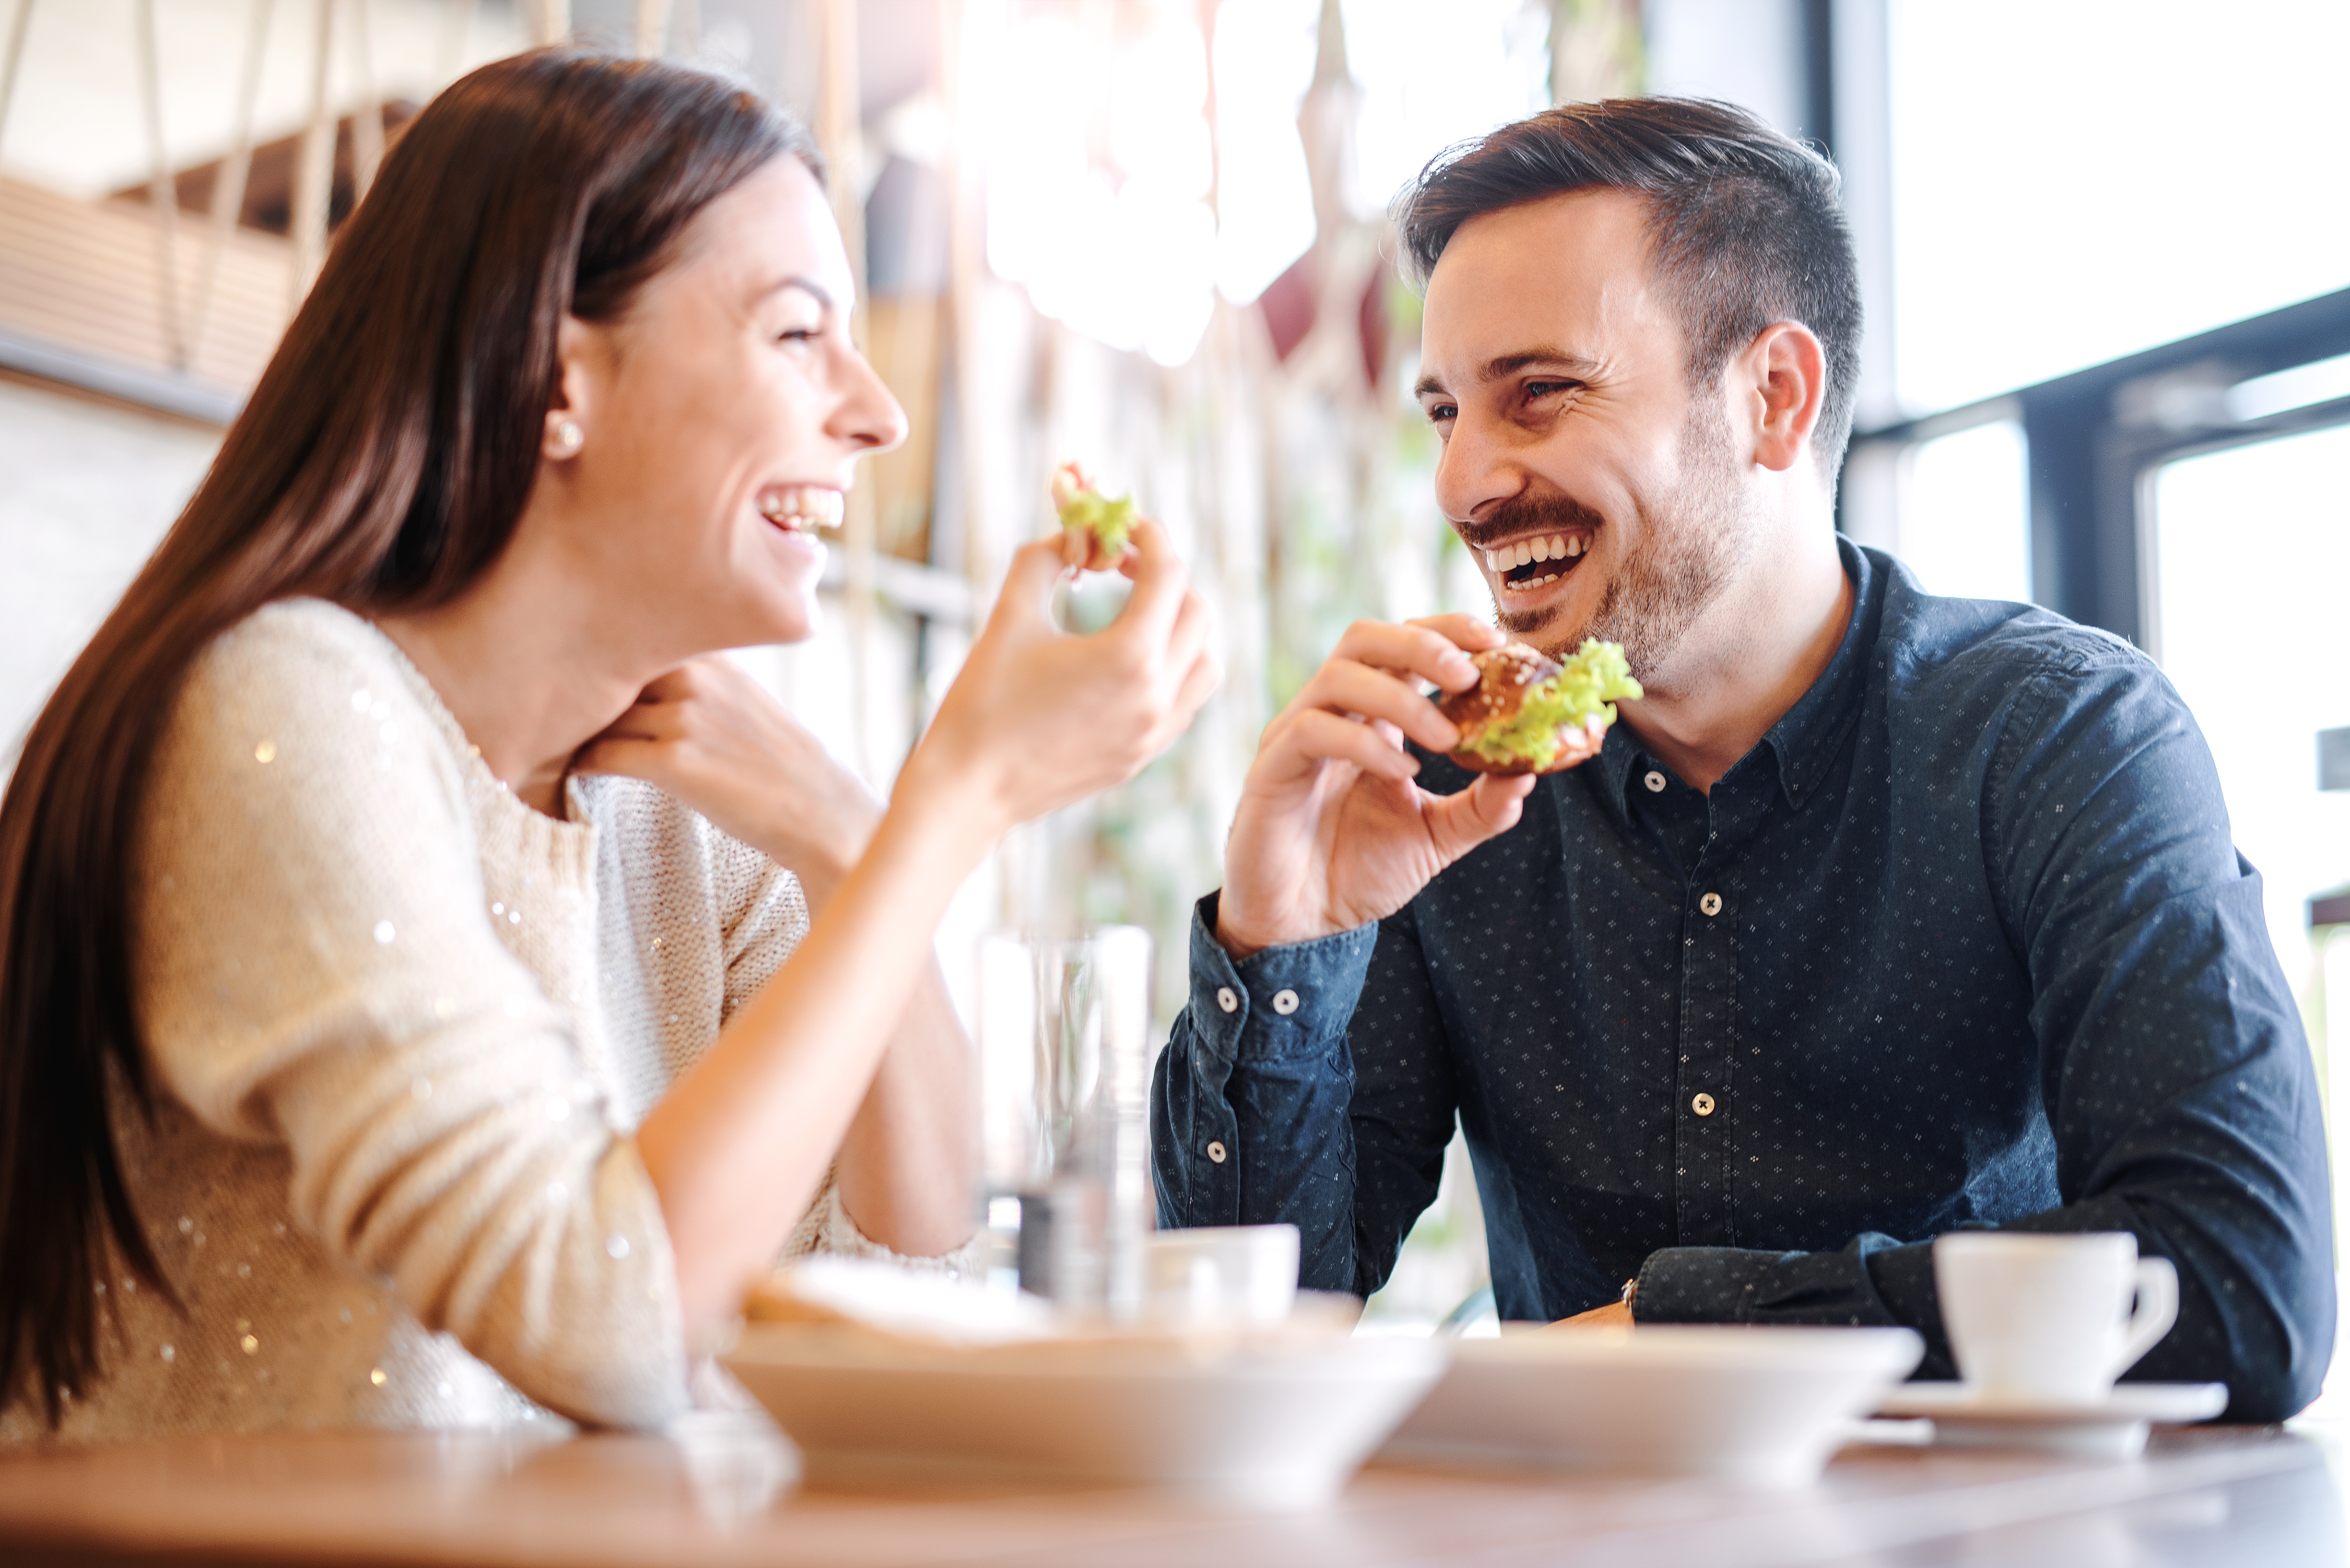 Ein lachendes Paar bei einer gemeinsamen Mahlzeit | Quelle: Shutterstock